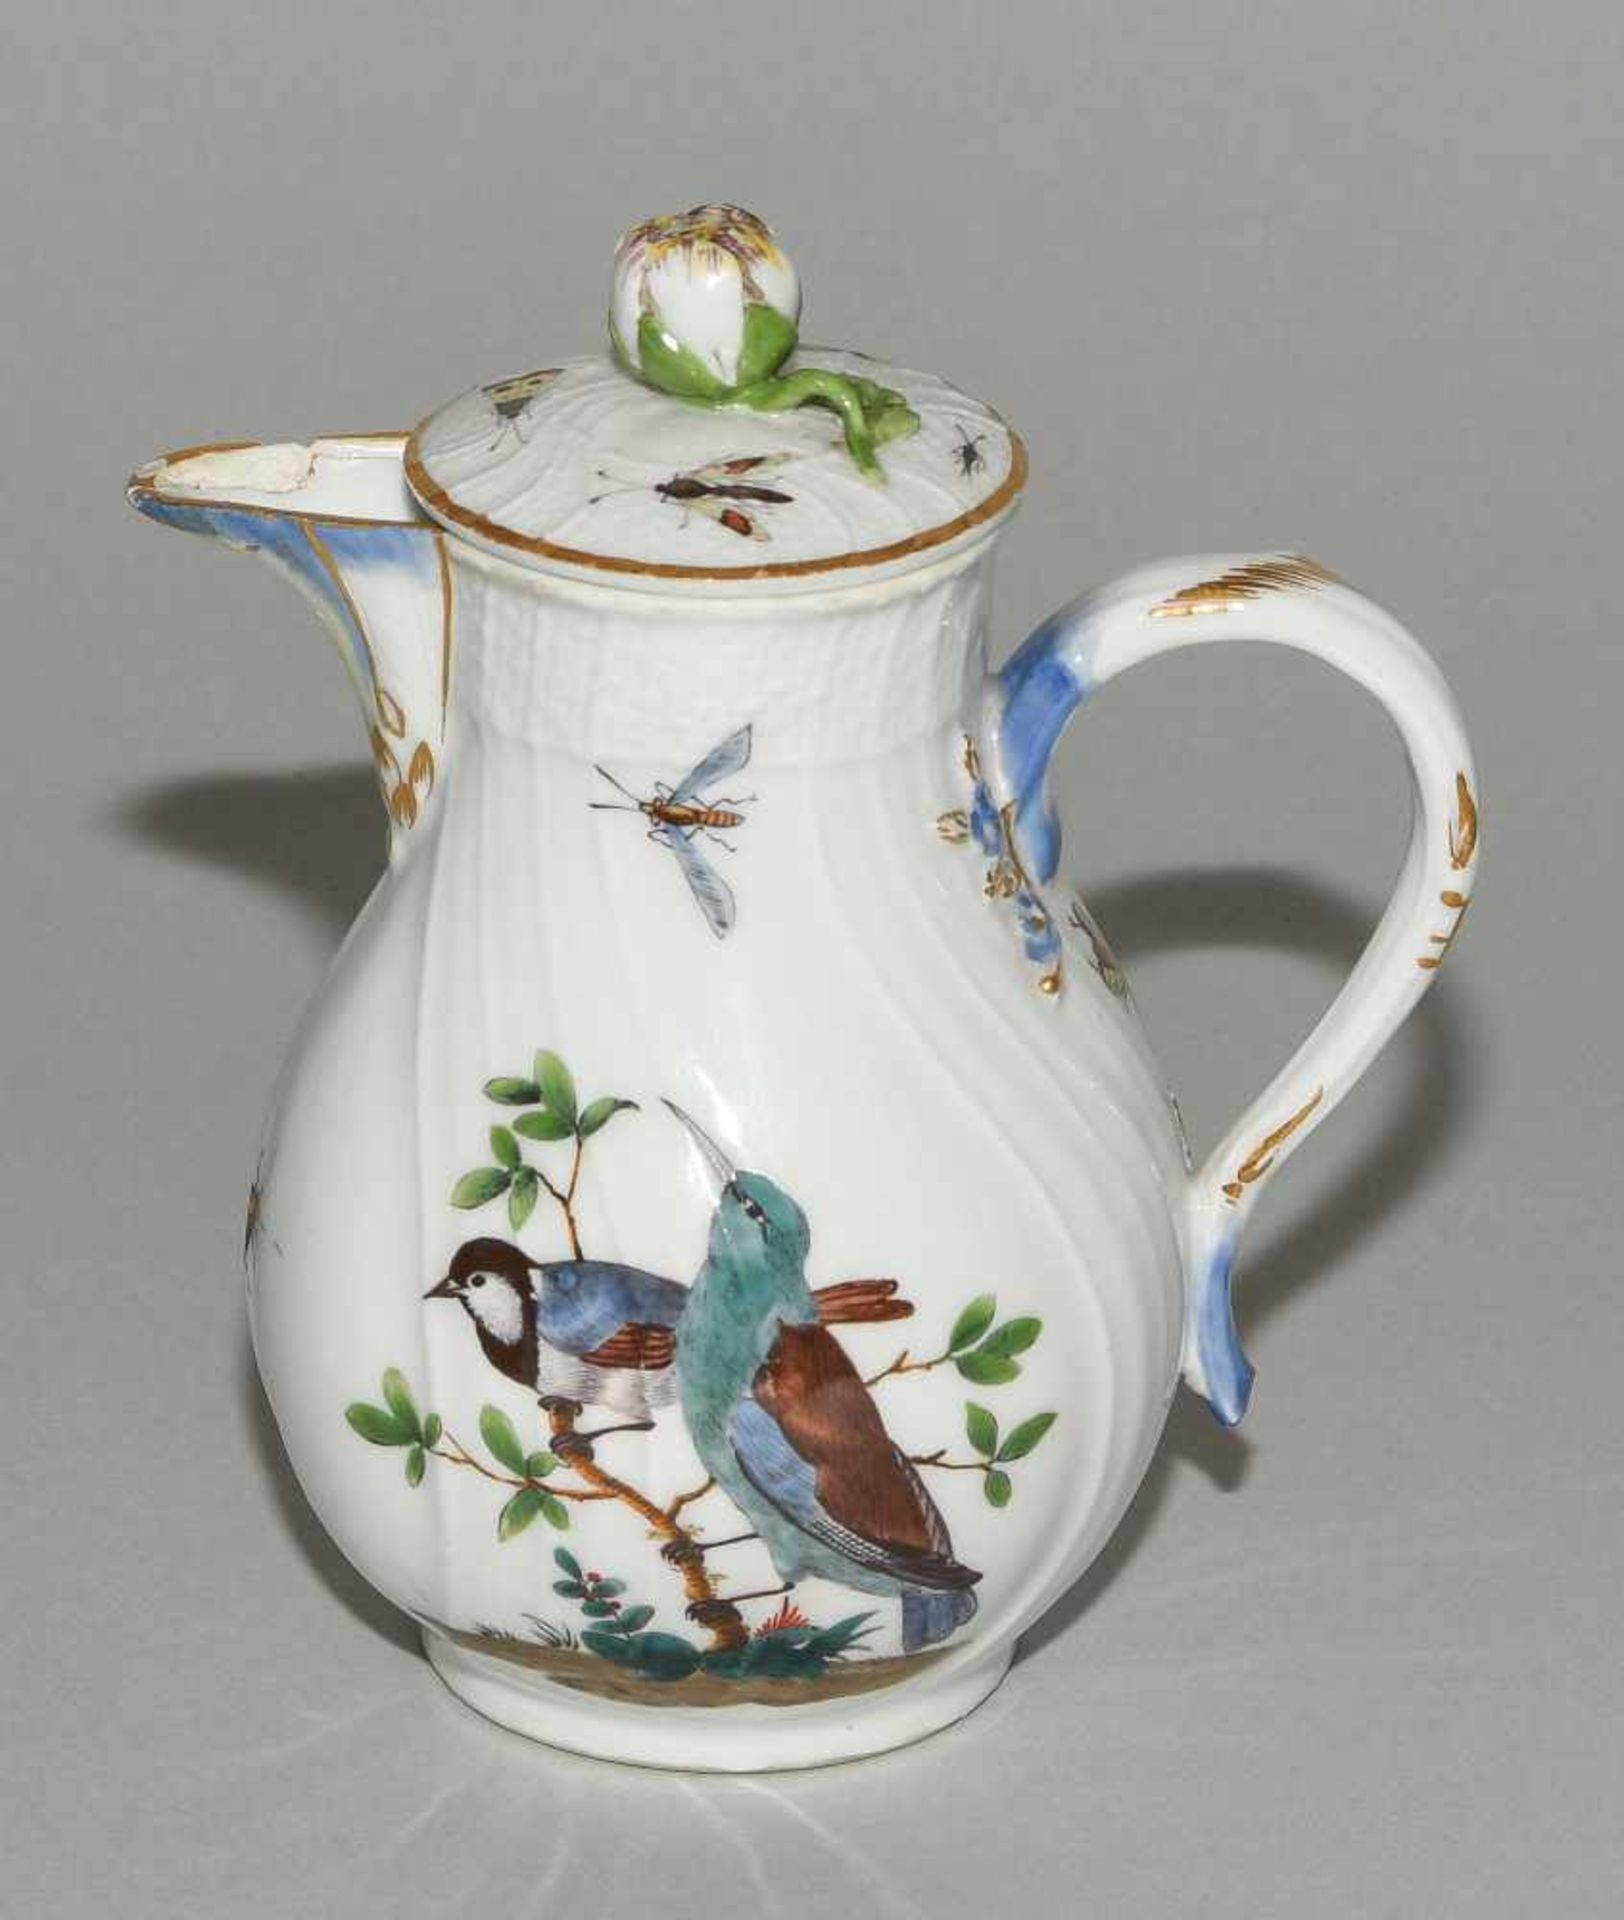 Kaffee- und Teeservice, Meissen Um 1770. Porzellan, Neuozier-Reliefdekor, polychrome Vogelmalerei - Bild 14 aus 64